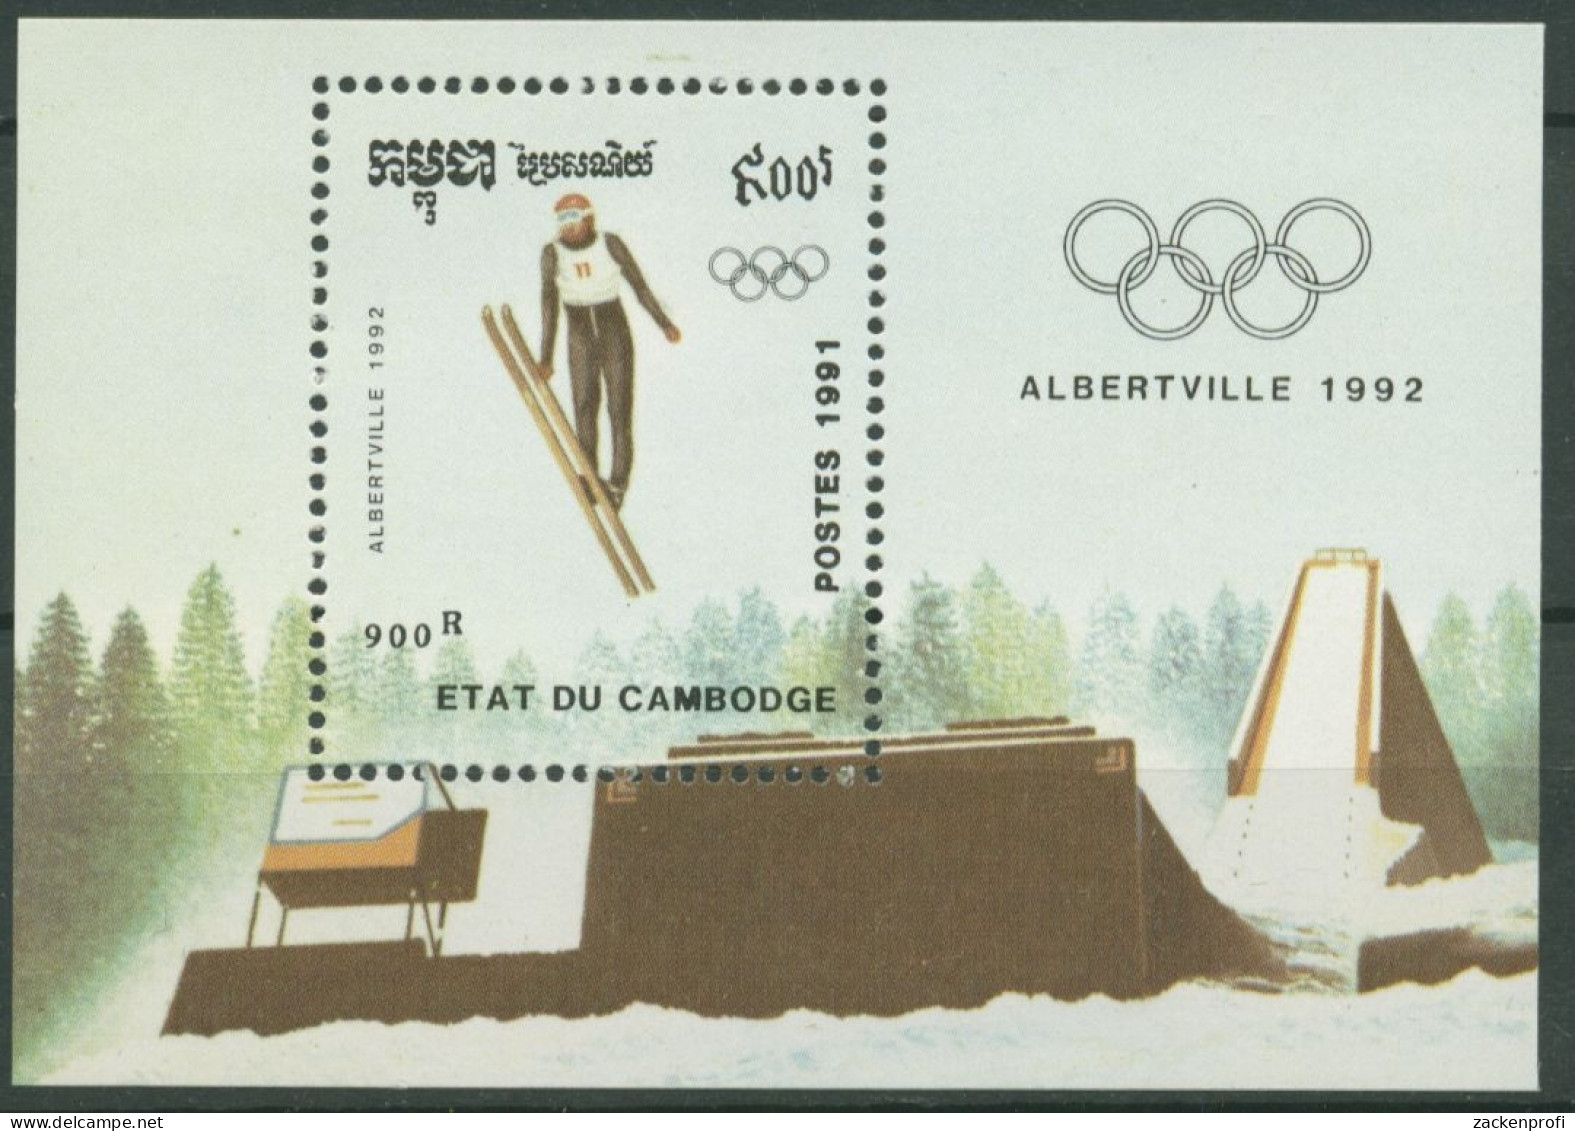 Kambodscha 1991 Olympiade Albertville: Skispringen Block 182 Postfrisch (C6811) - Kambodscha